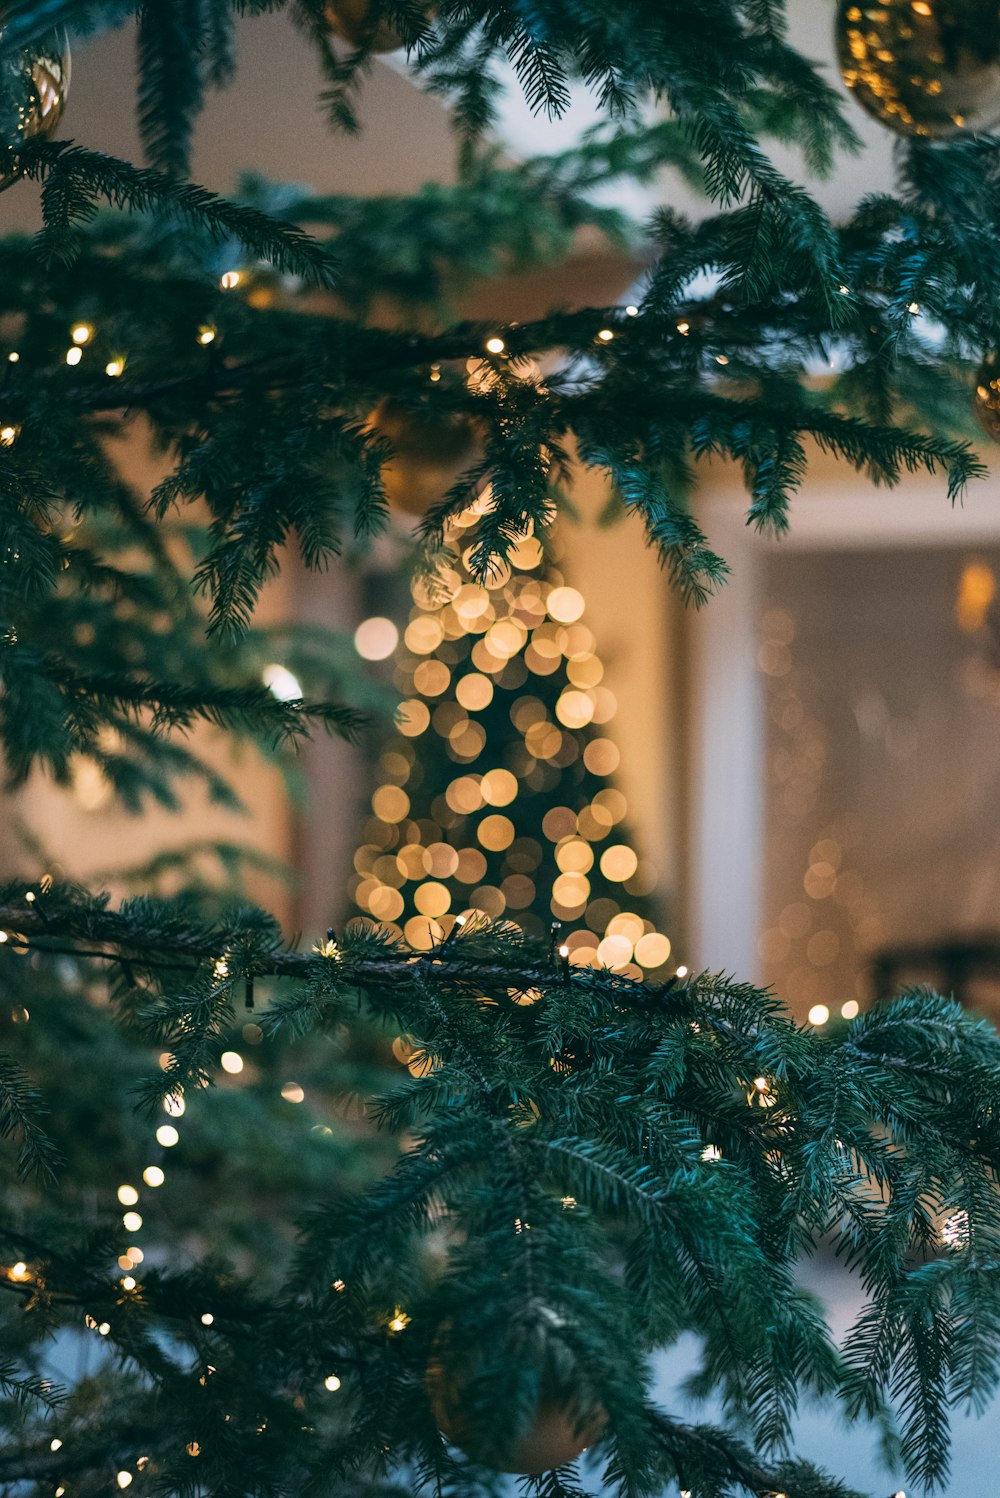 Hãy khám phá những đèn dây Noel lung linh đang chờ bạn trên hình ảnh! Chúng sẽ mang đến cho ngôi nhà của bạn một không gian lộng lẫy và ấm áp trong dịp Giáng Sinh sắp tới.